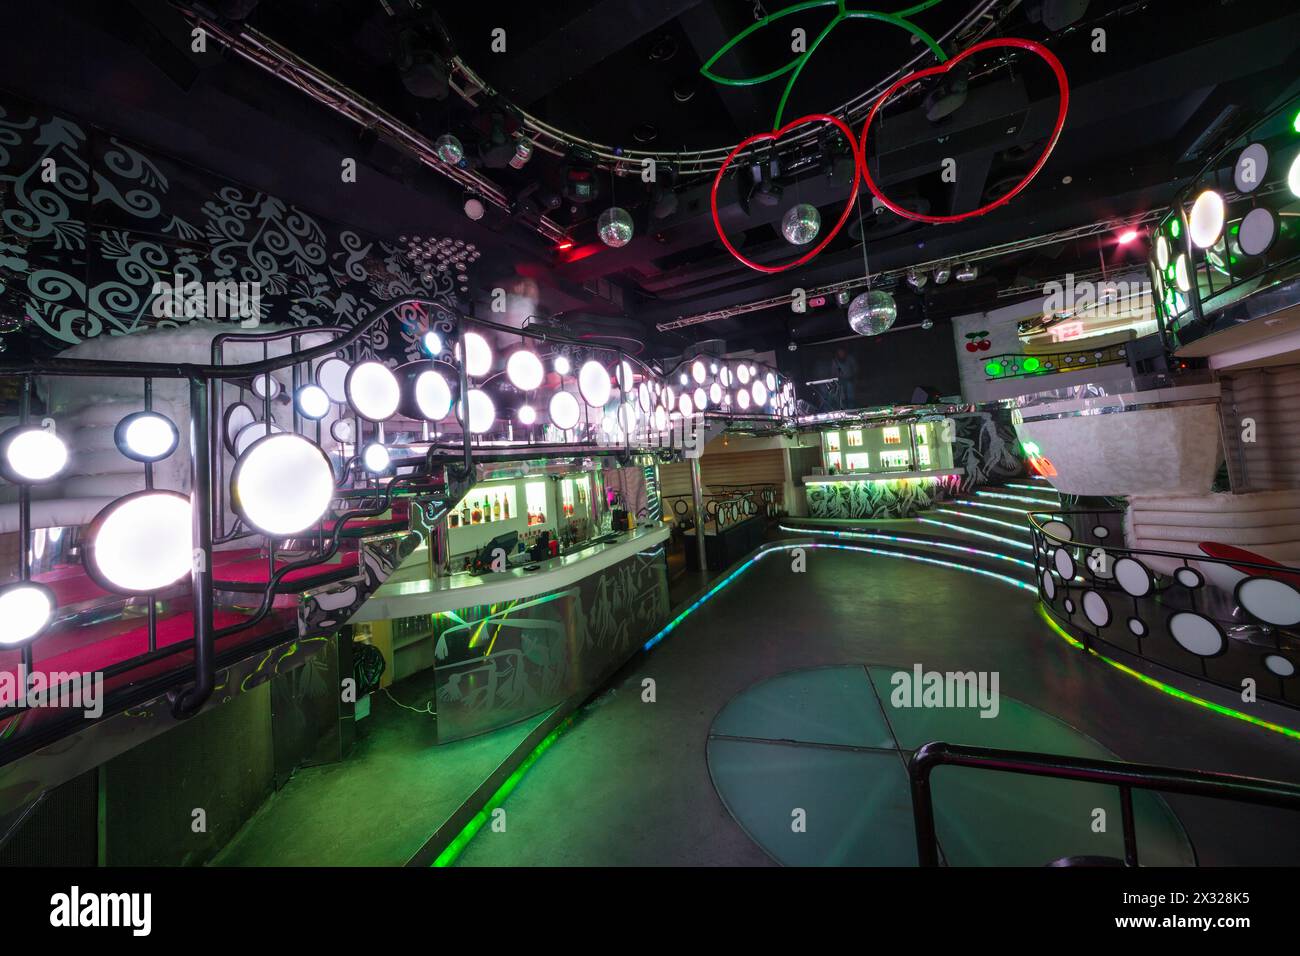 MOSKAU - 18. JAN: Das Innere eines der Räume des Nachtclubs Pacha mit Tanzfläche und Spiegelkugeln am 18. Januar 2013 in Moskau, Russland. Stockfoto